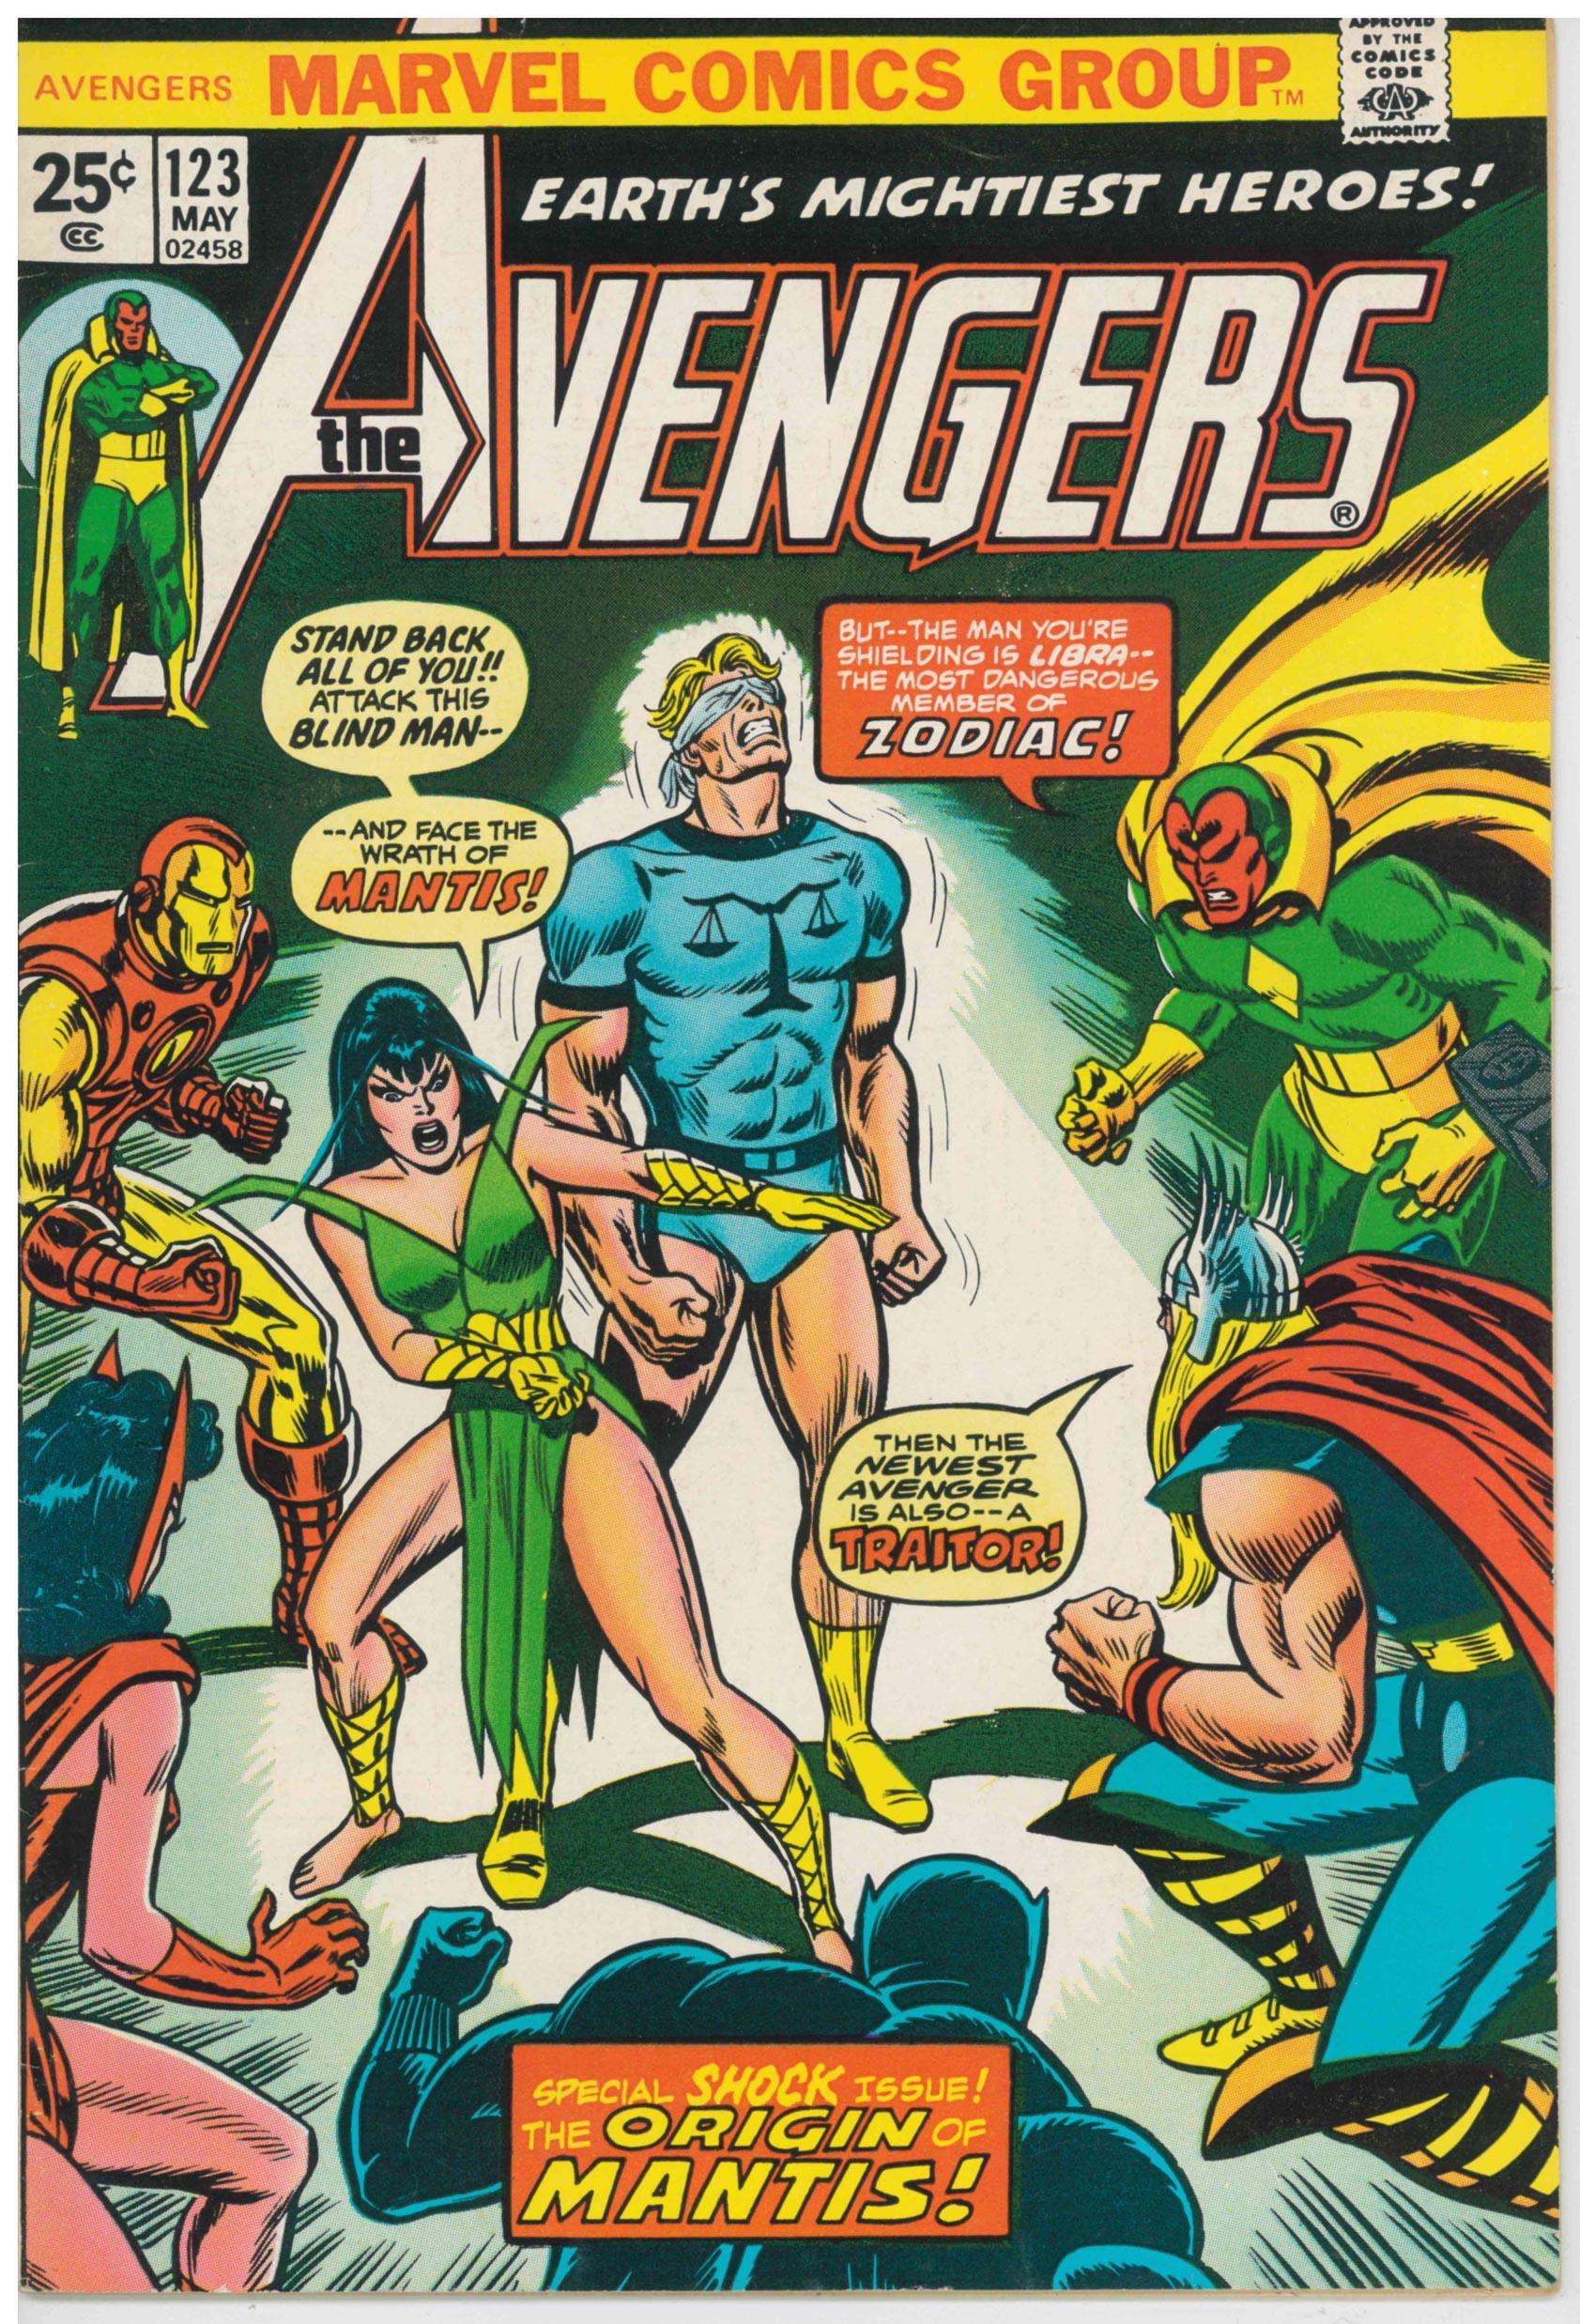 AVENGERS (1963) #123 (VF) - Kings Comics